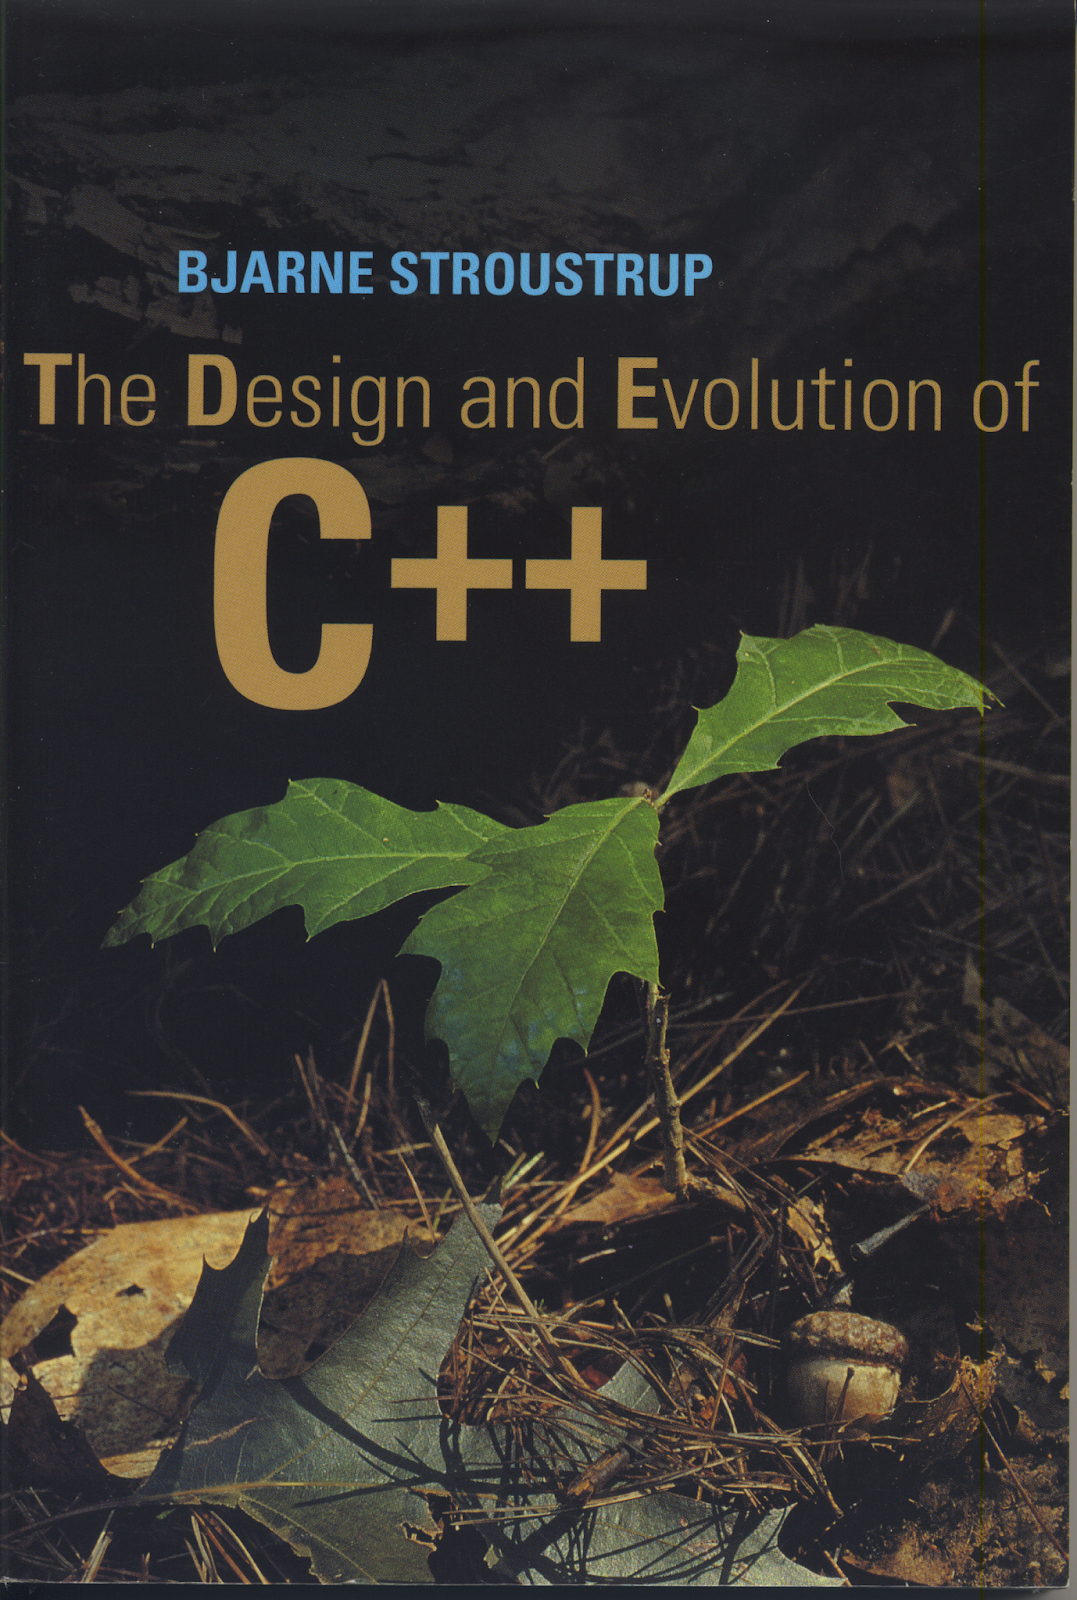 Книга языка c. C++ Страуструп книга. Язык программирования c++ бьёрн Страуструп книга. Дизайн и Эволюция c++ бьёрн Страуструп. Дизайн и Эволюция c++.